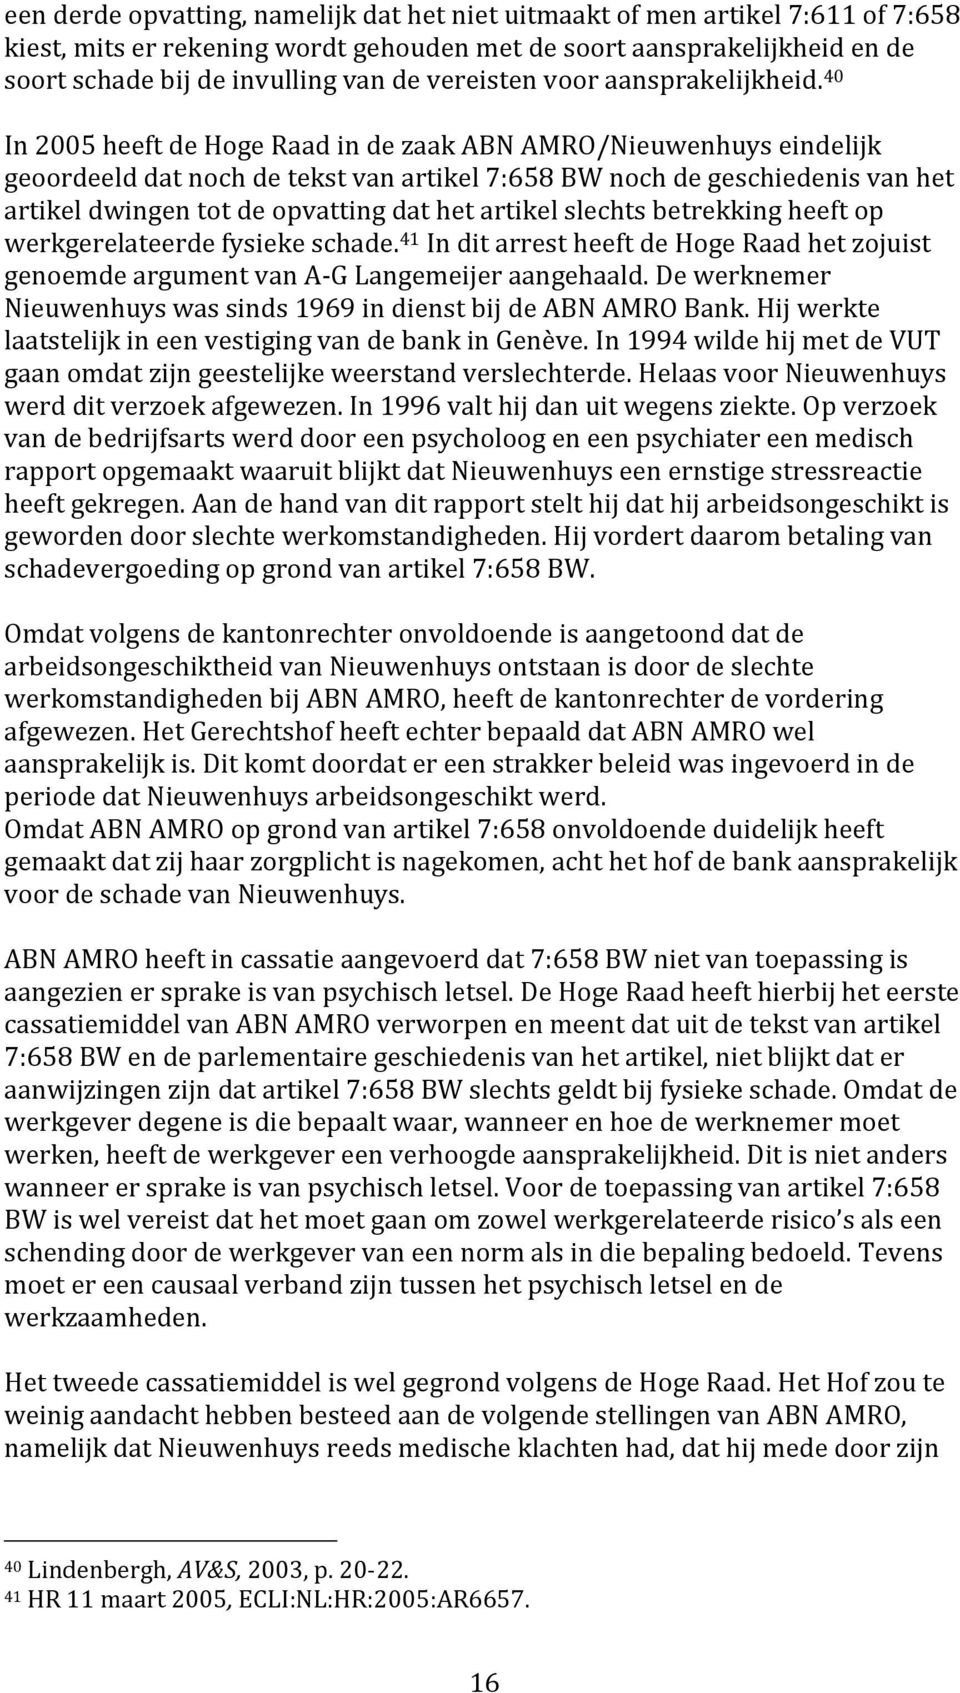 40 In 2005 heeft de Hoge Raad in de zaak ABN AMRO/Nieuwenhuys eindelijk geoordeeld dat noch de tekst van artikel 7:658 BW noch de geschiedenis van het artikel dwingen tot de opvatting dat het artikel